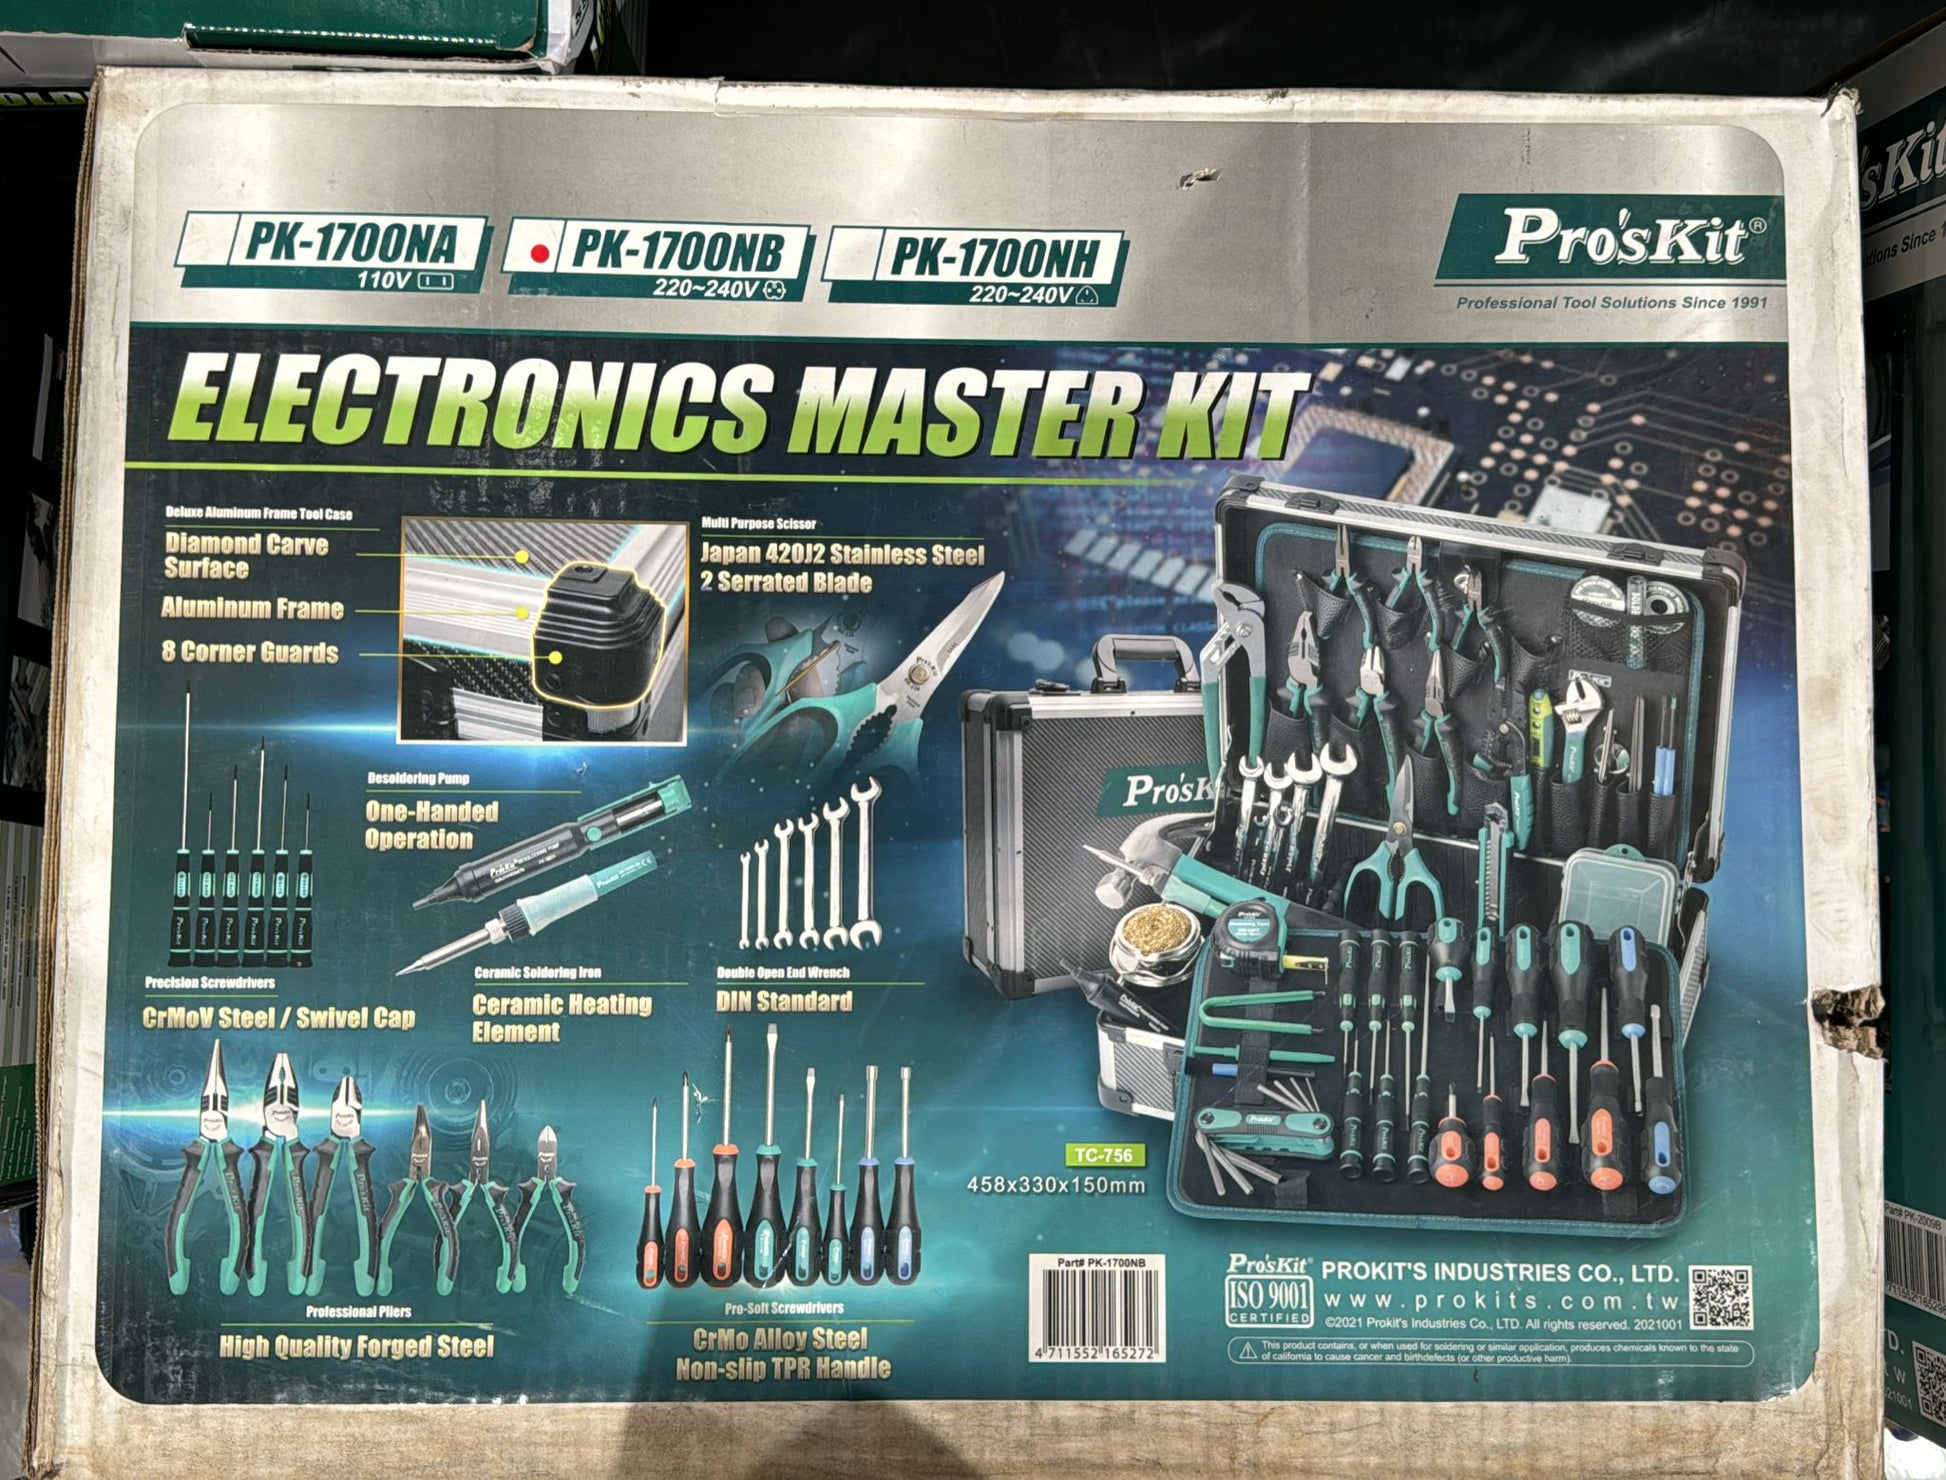 Pro'skit PK-1700NB, the electronics master kit